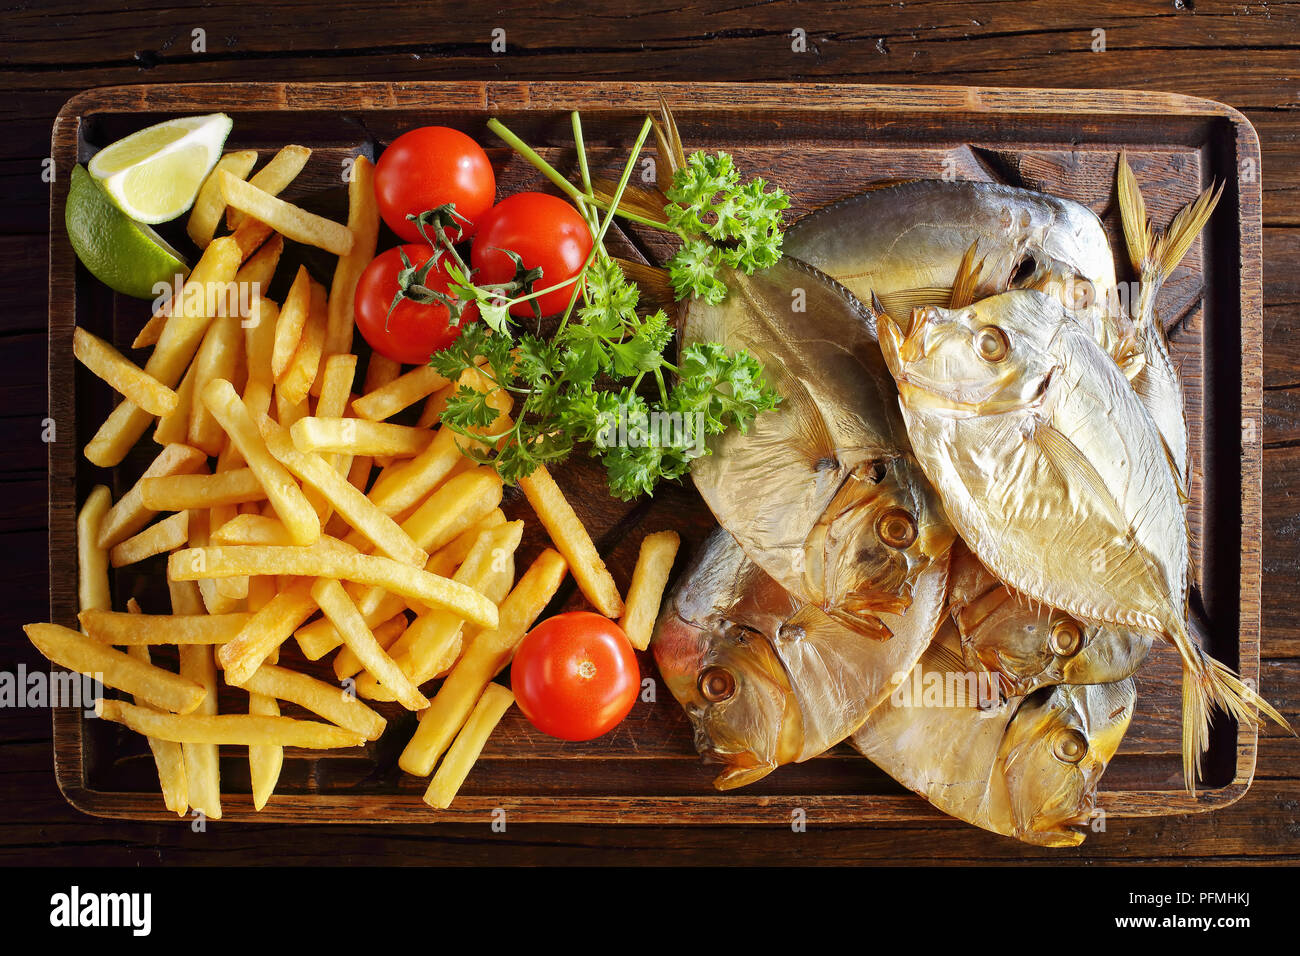 Köstlich kalt geräuchert Mond Fisch und Pommes frites auf braun Schneidbrett auf rustikalen Holztisch serviert, Ansicht von oben, close-up Stockfoto